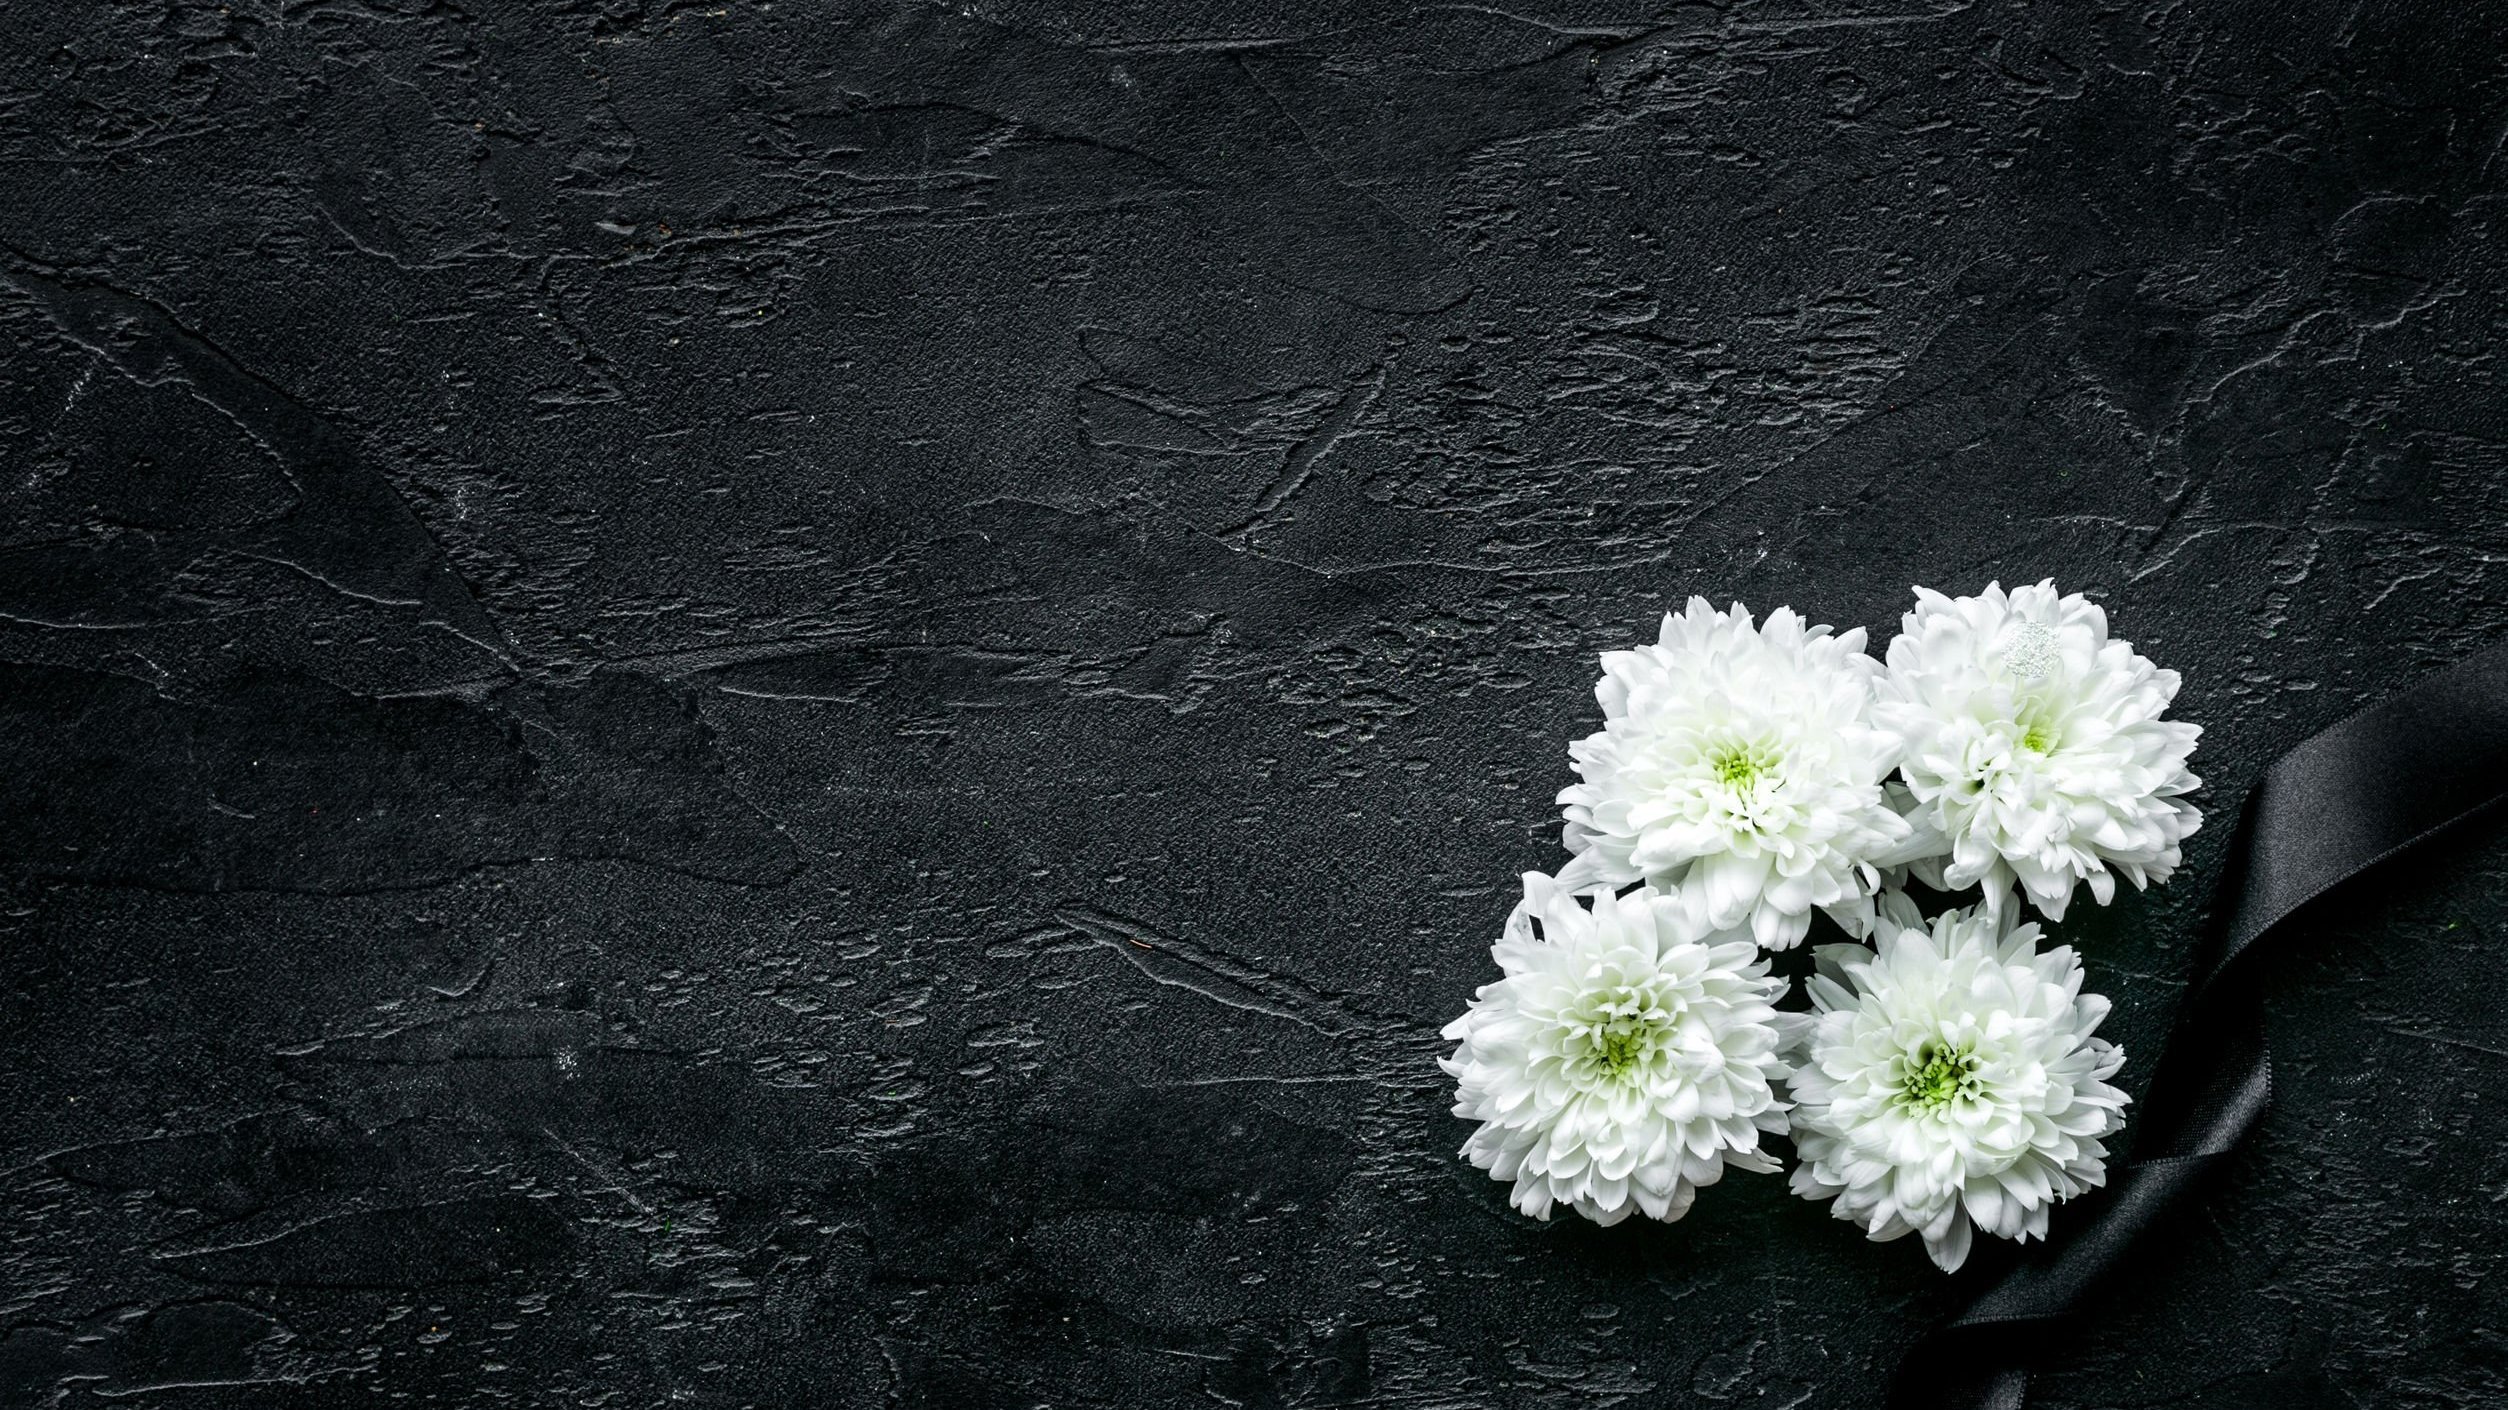 Flores em fundo preto simbolizando luto.